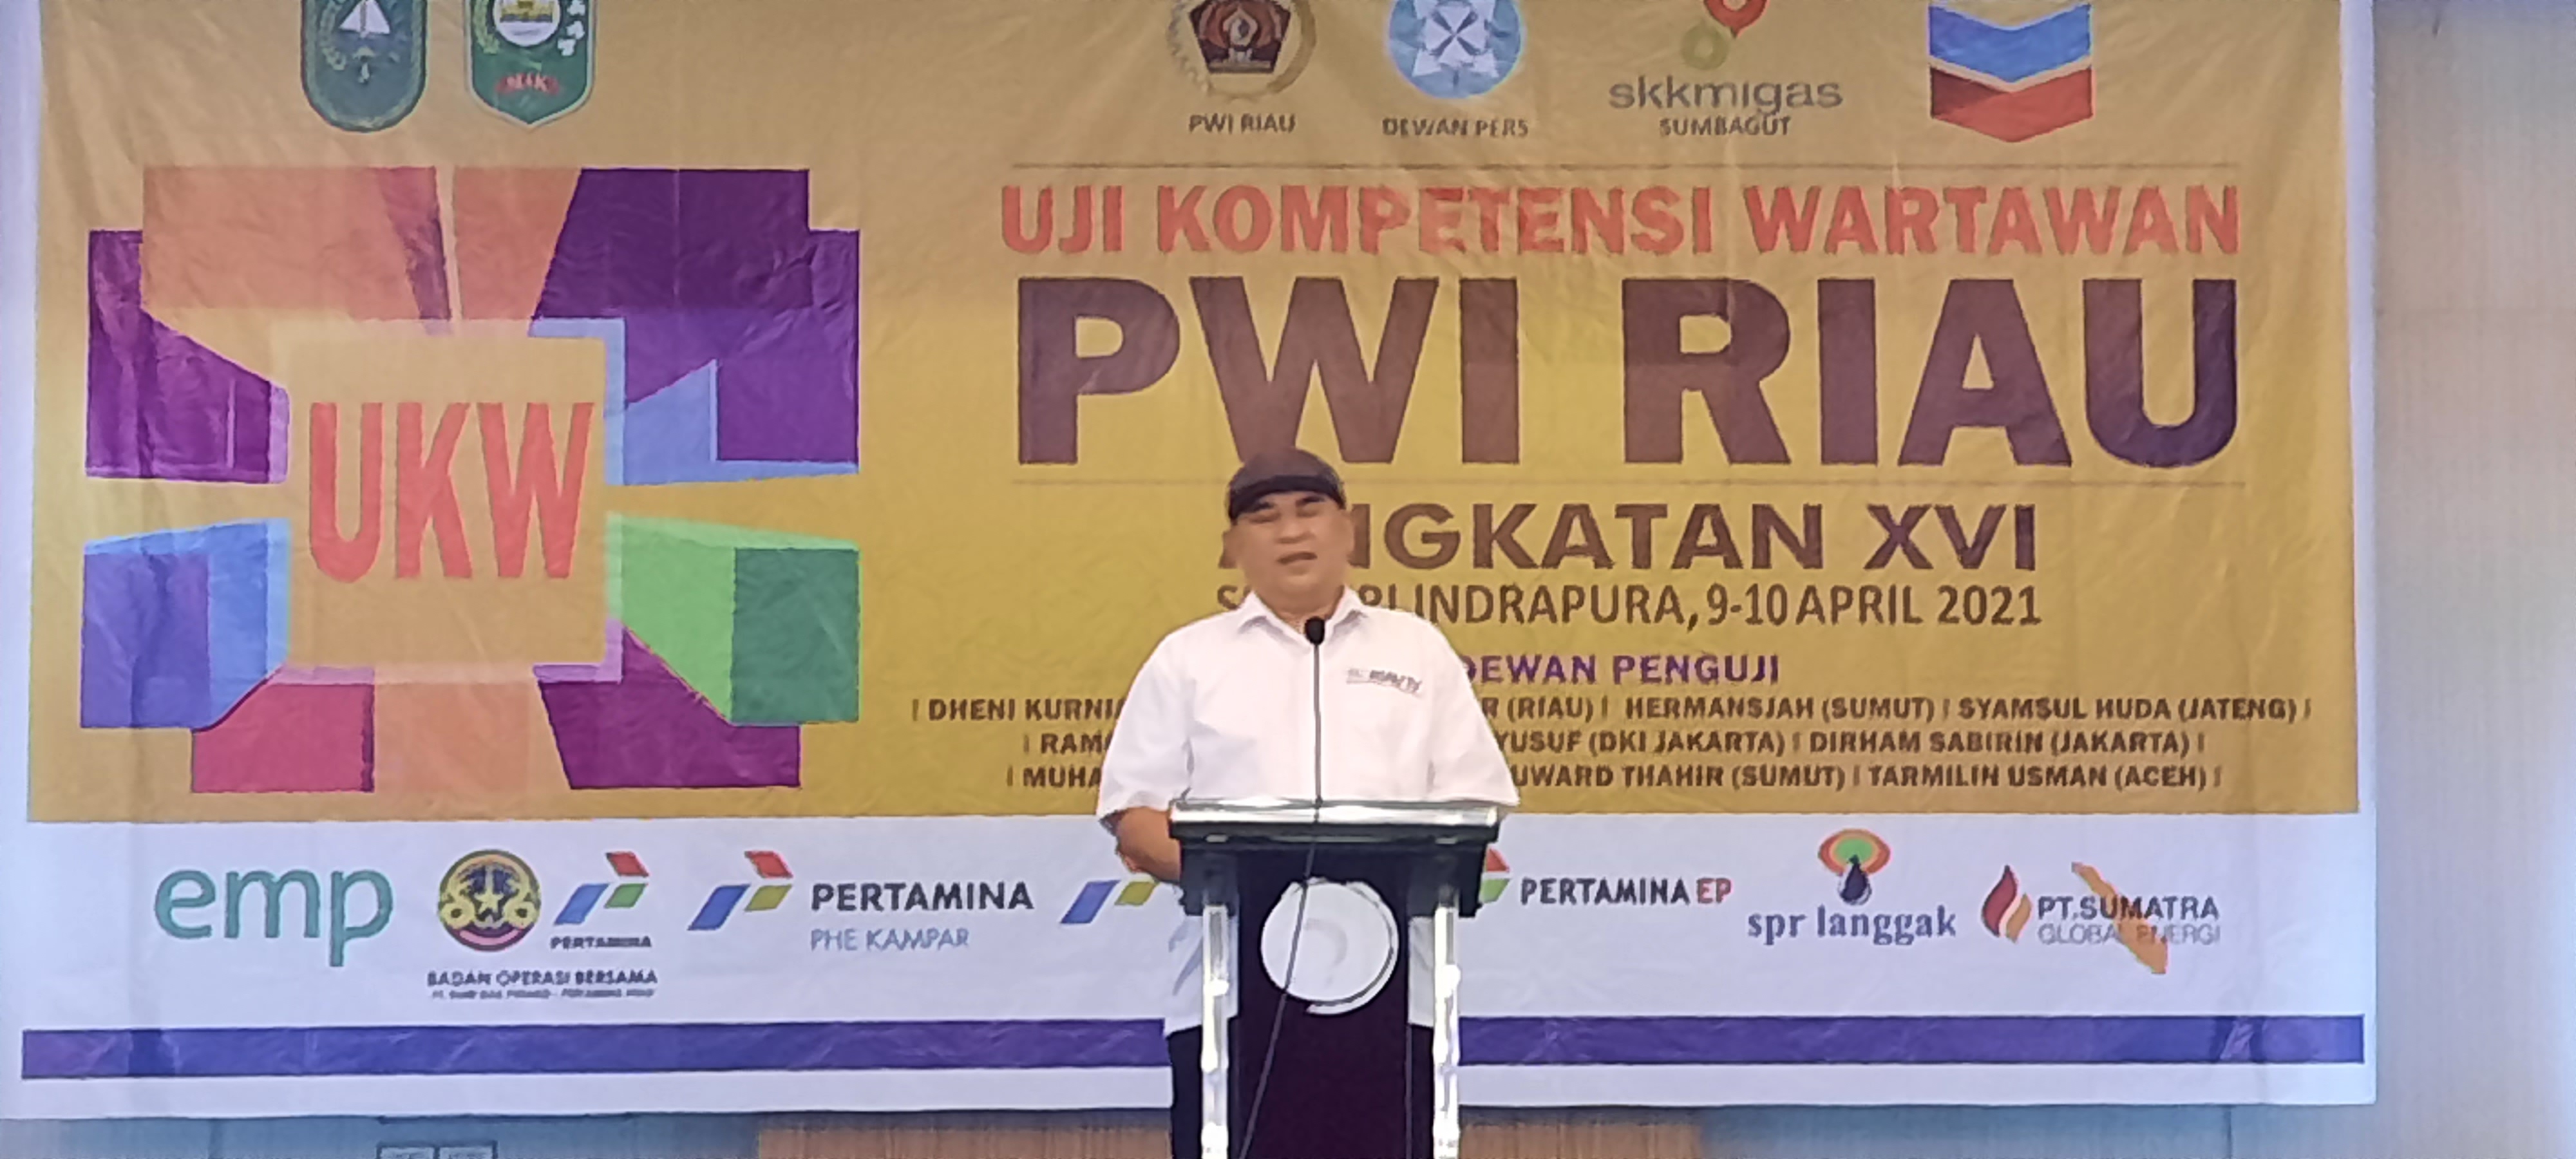 UKW Angkatan XVII PWI Riau Tetap Gratis, Buruan Daftar!